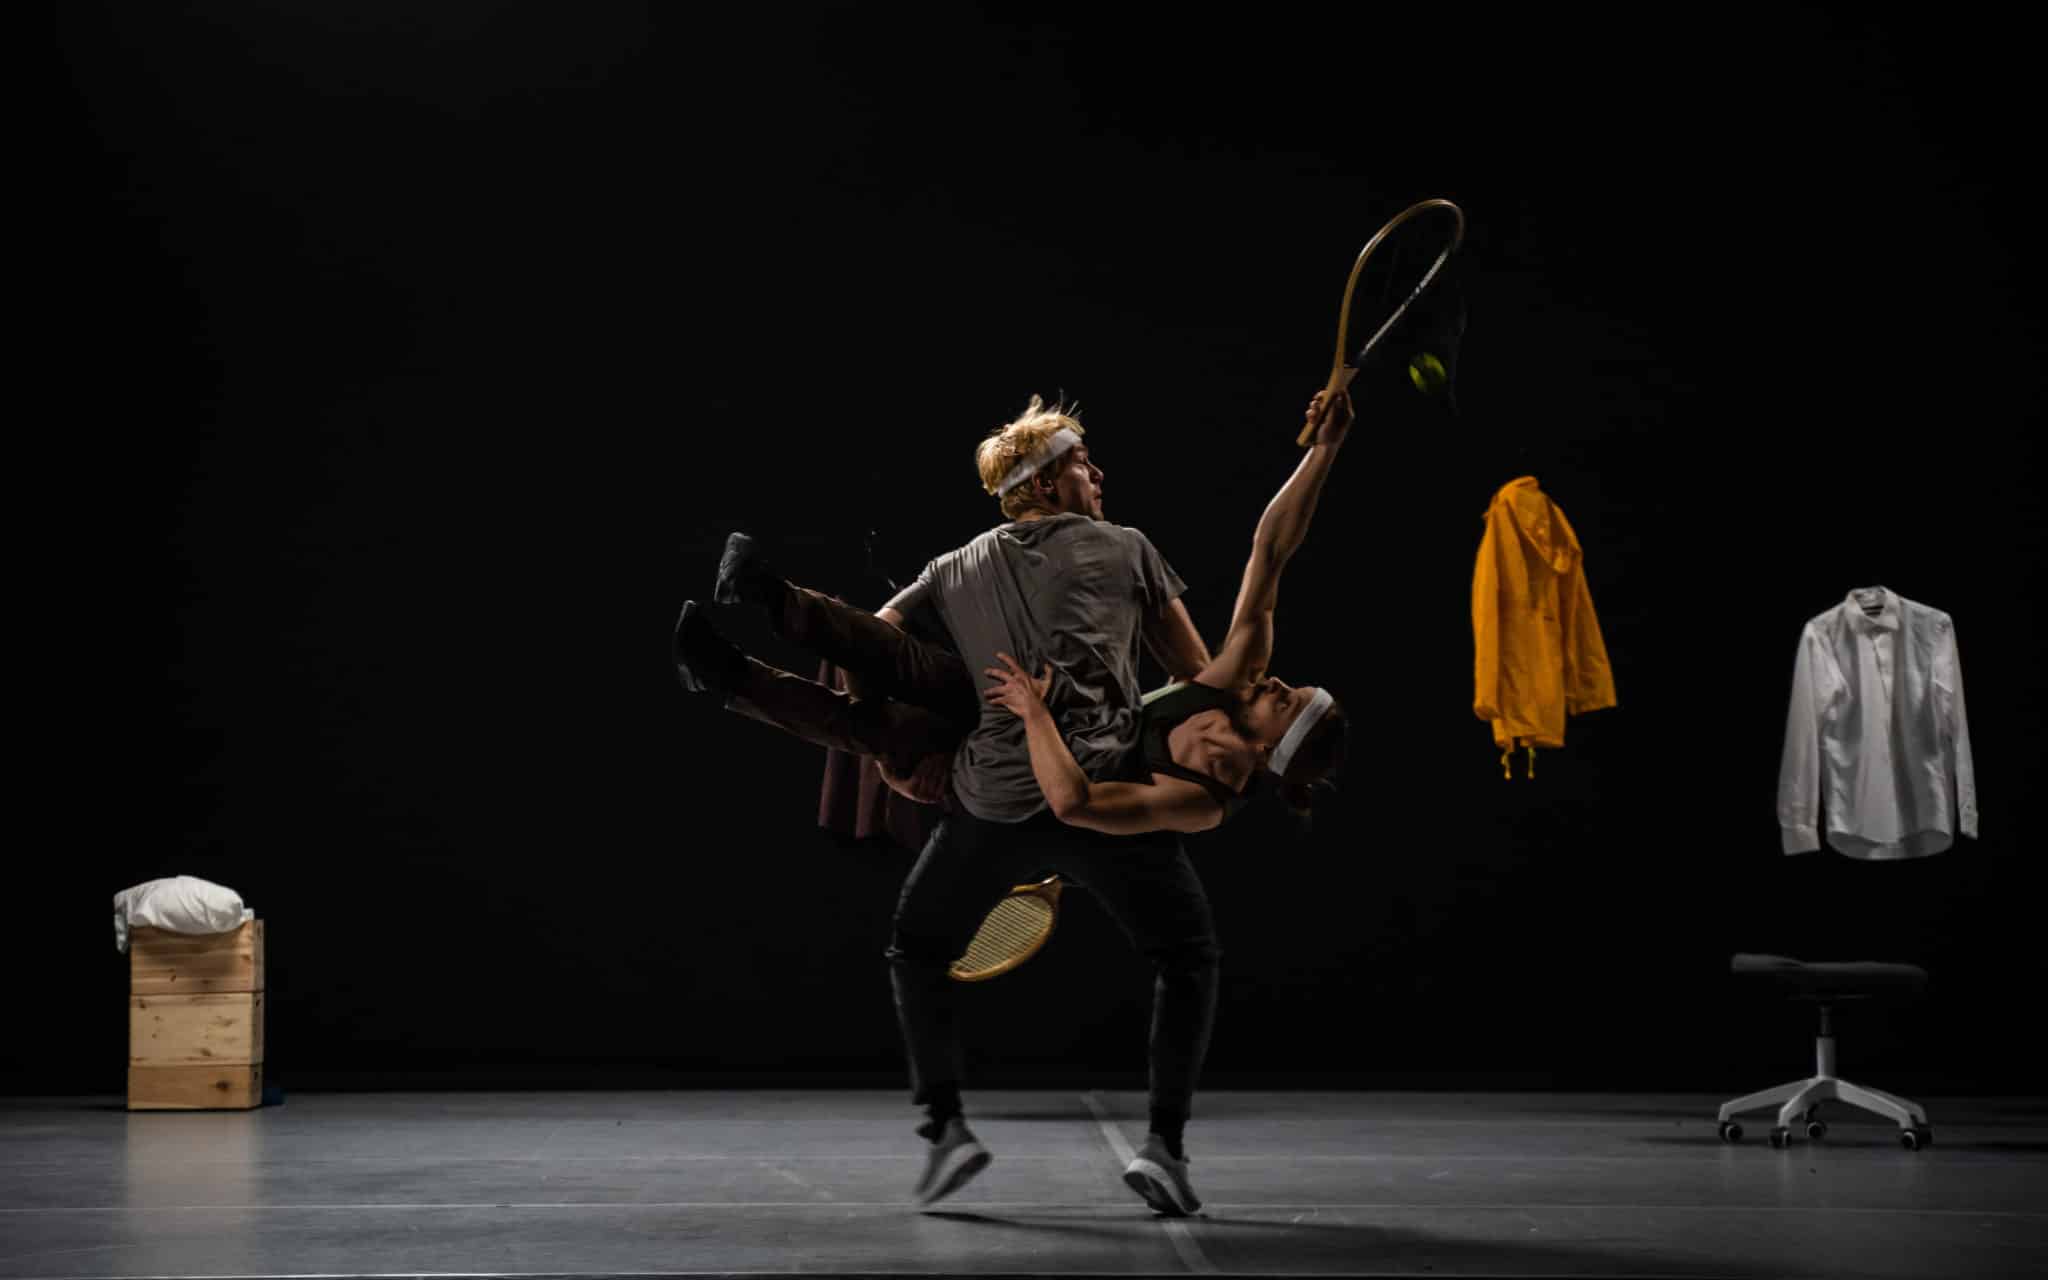 Stillbilde fra forestillingen. Svakt opplyst scene, der to utøvere er i gang med et akrobatisk stunt med tennisracketer og en ball. En jakke, skjorte og seter kan sees i bakgrunnen av scenen.